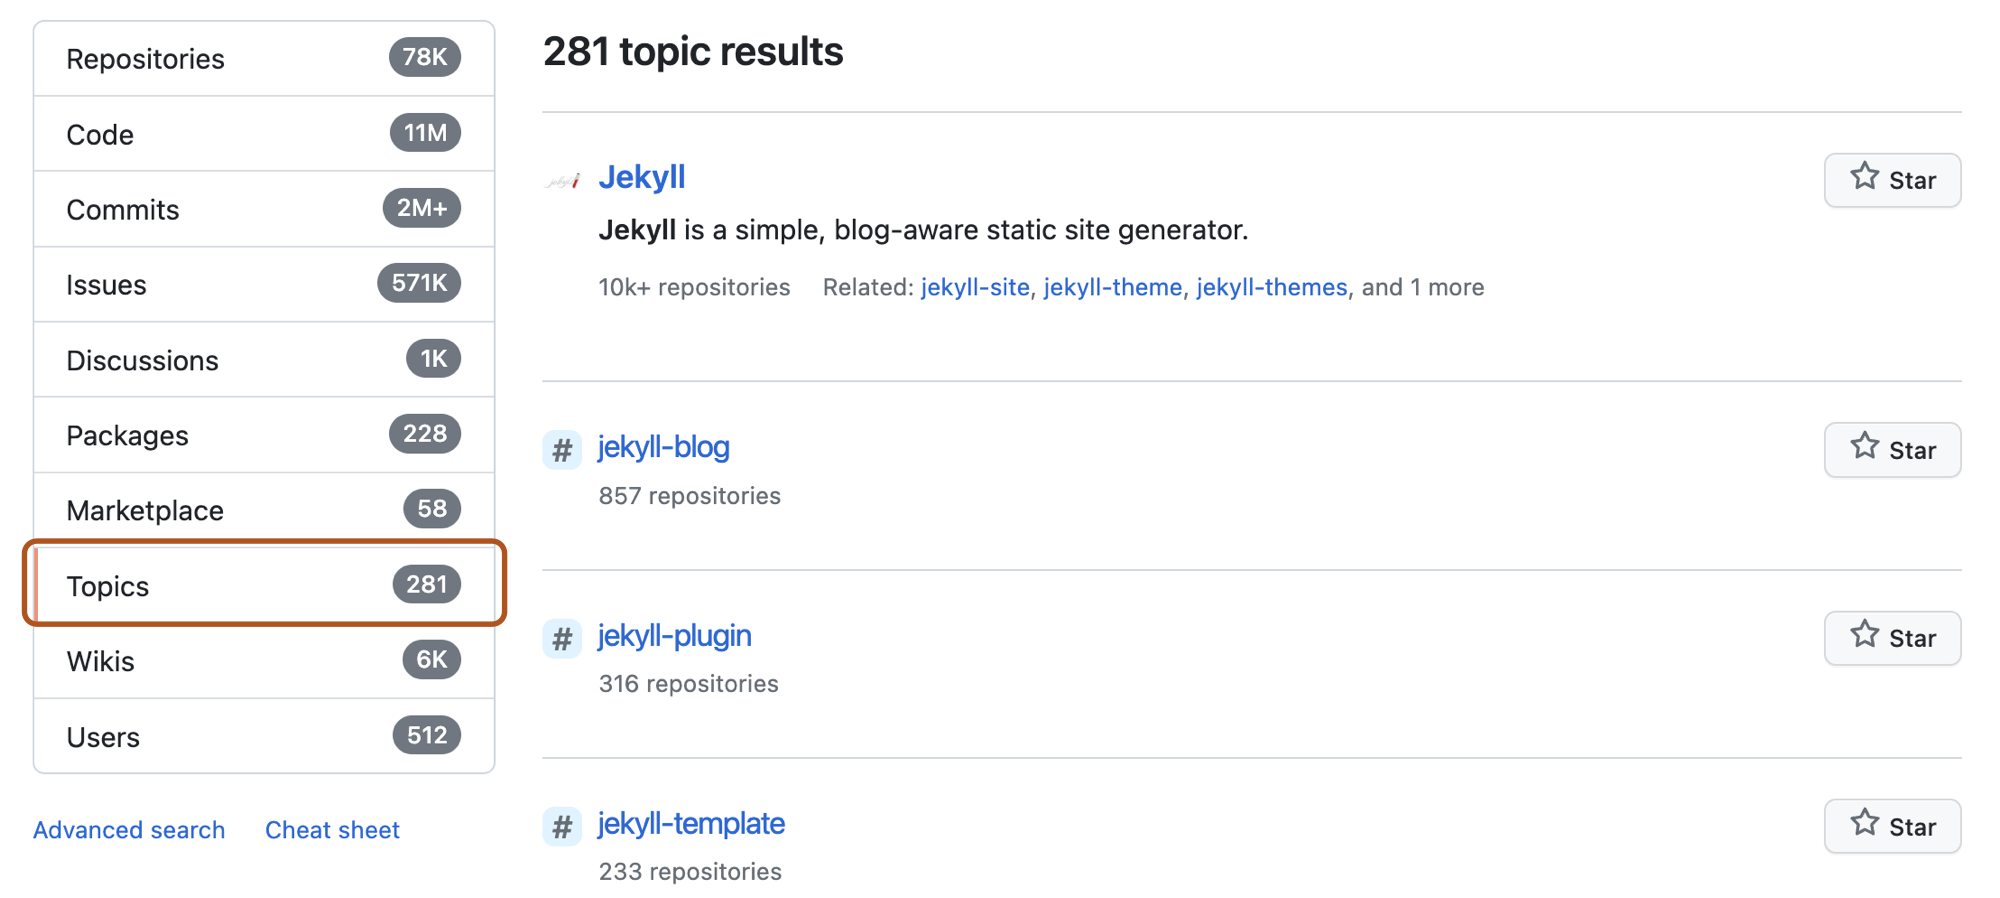  Снимок экрана: страница результатов поиска репозитория для условия поиска jekyll с параметром "Темы" в меню слева, выделенным темно-оранжевым цветом.